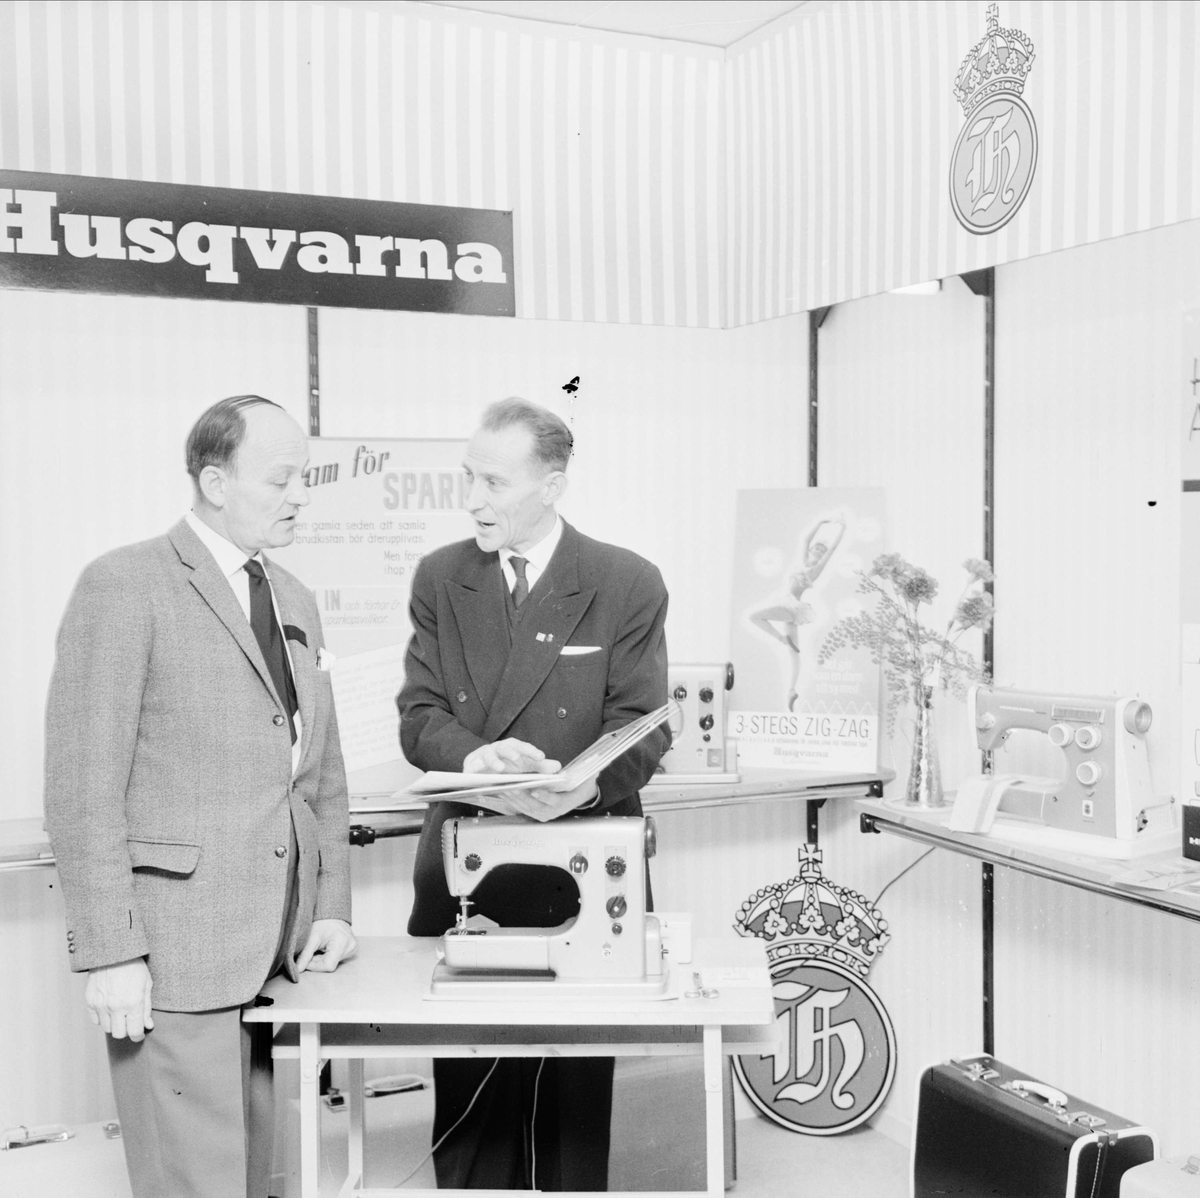 "Husqvarna - ny butik för hemapparater" - Uppsala, februari 1962